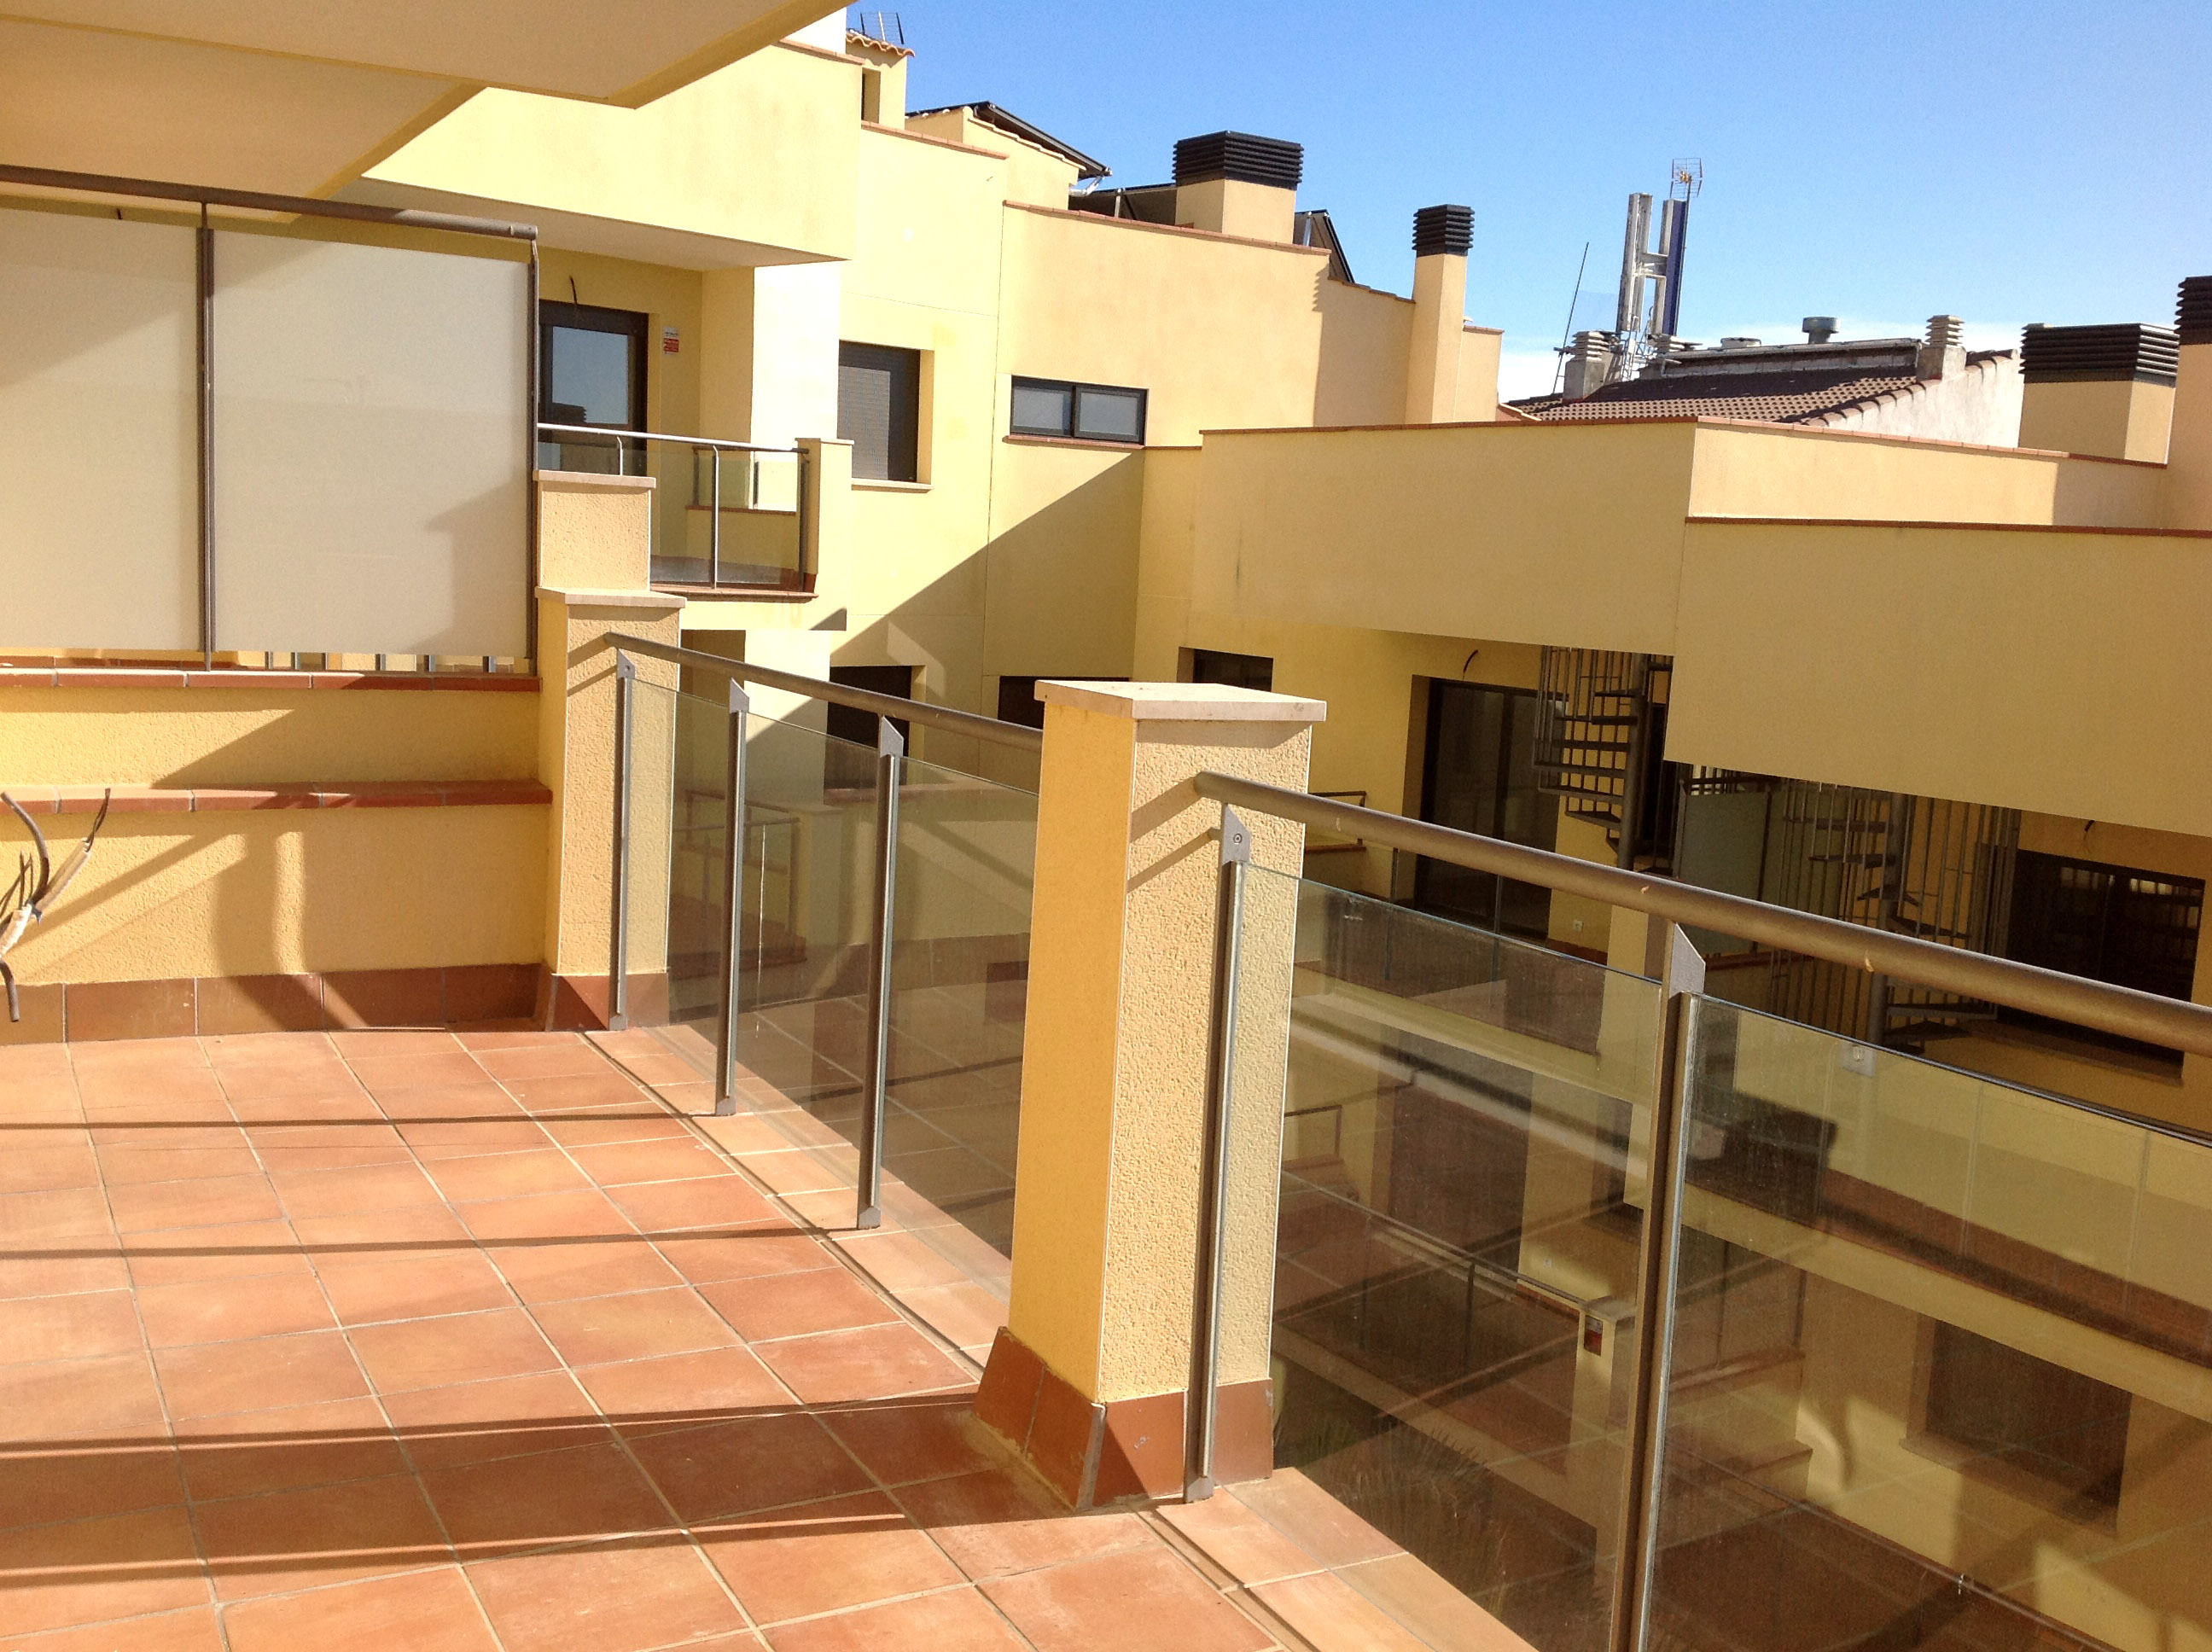 Апартаменты в Таррагона - Коста Дорада, площадь 65 м², 2 спальни 